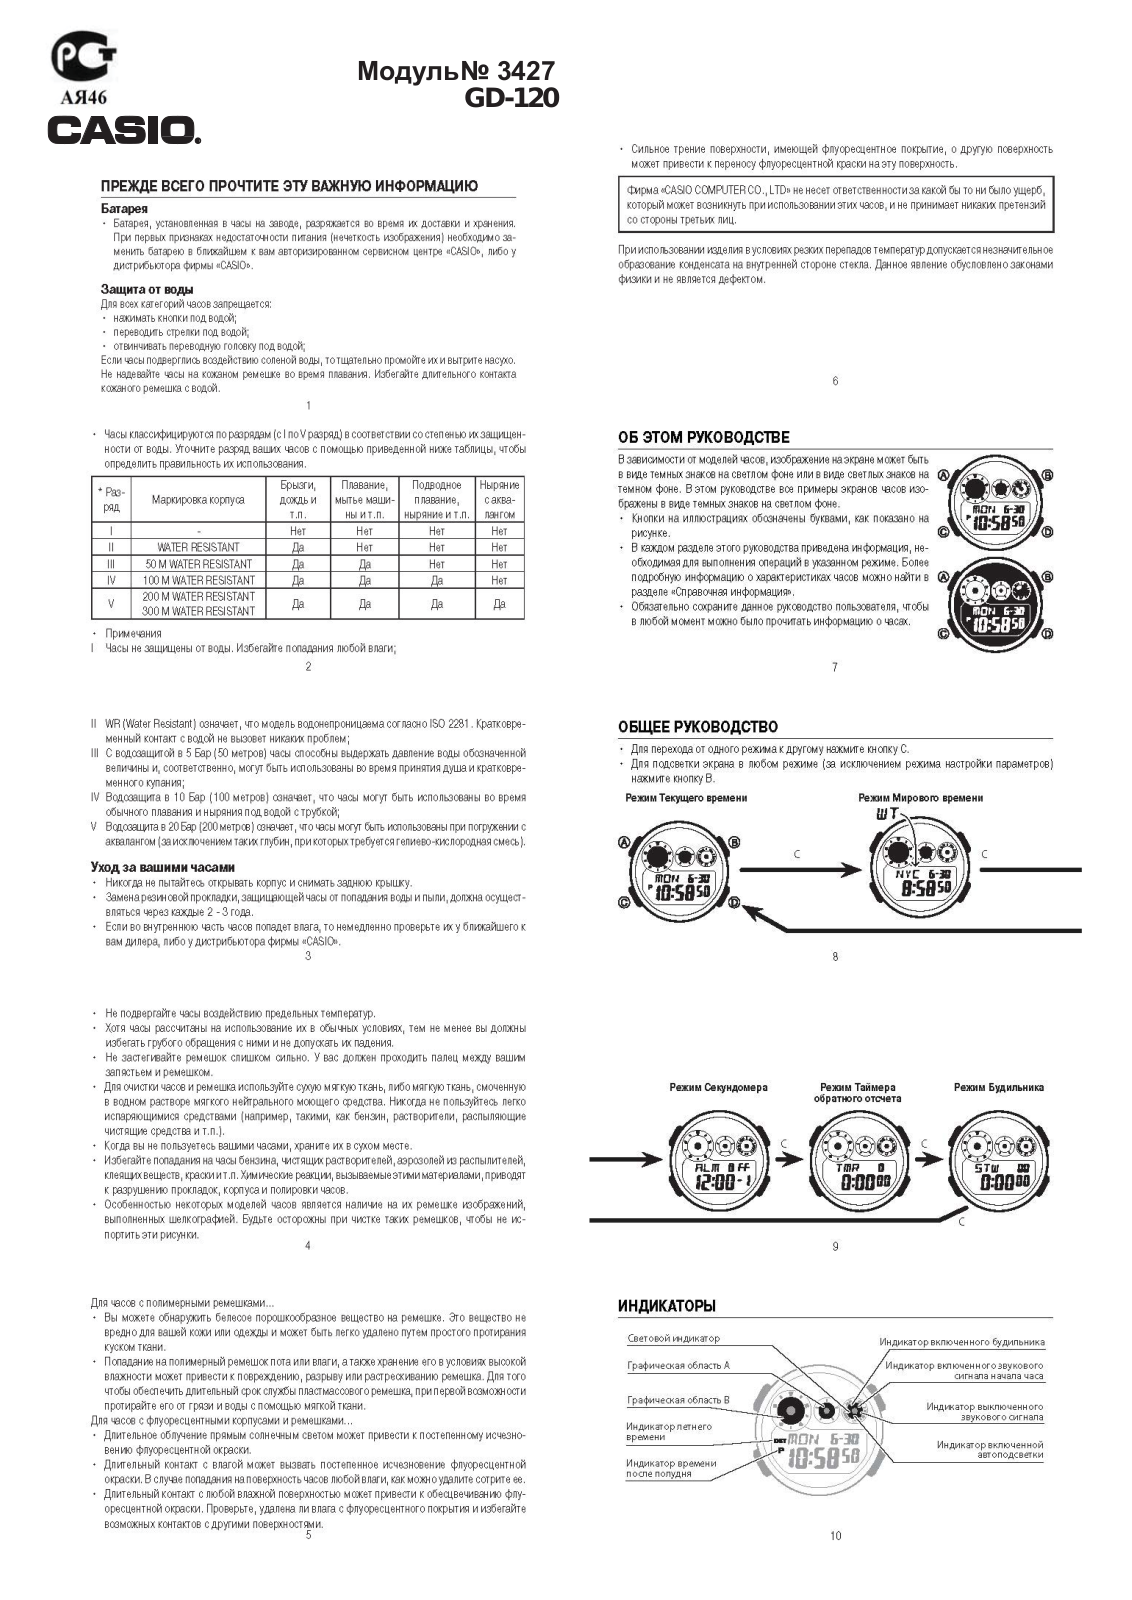 Casio GD-120CM-4E User Manual